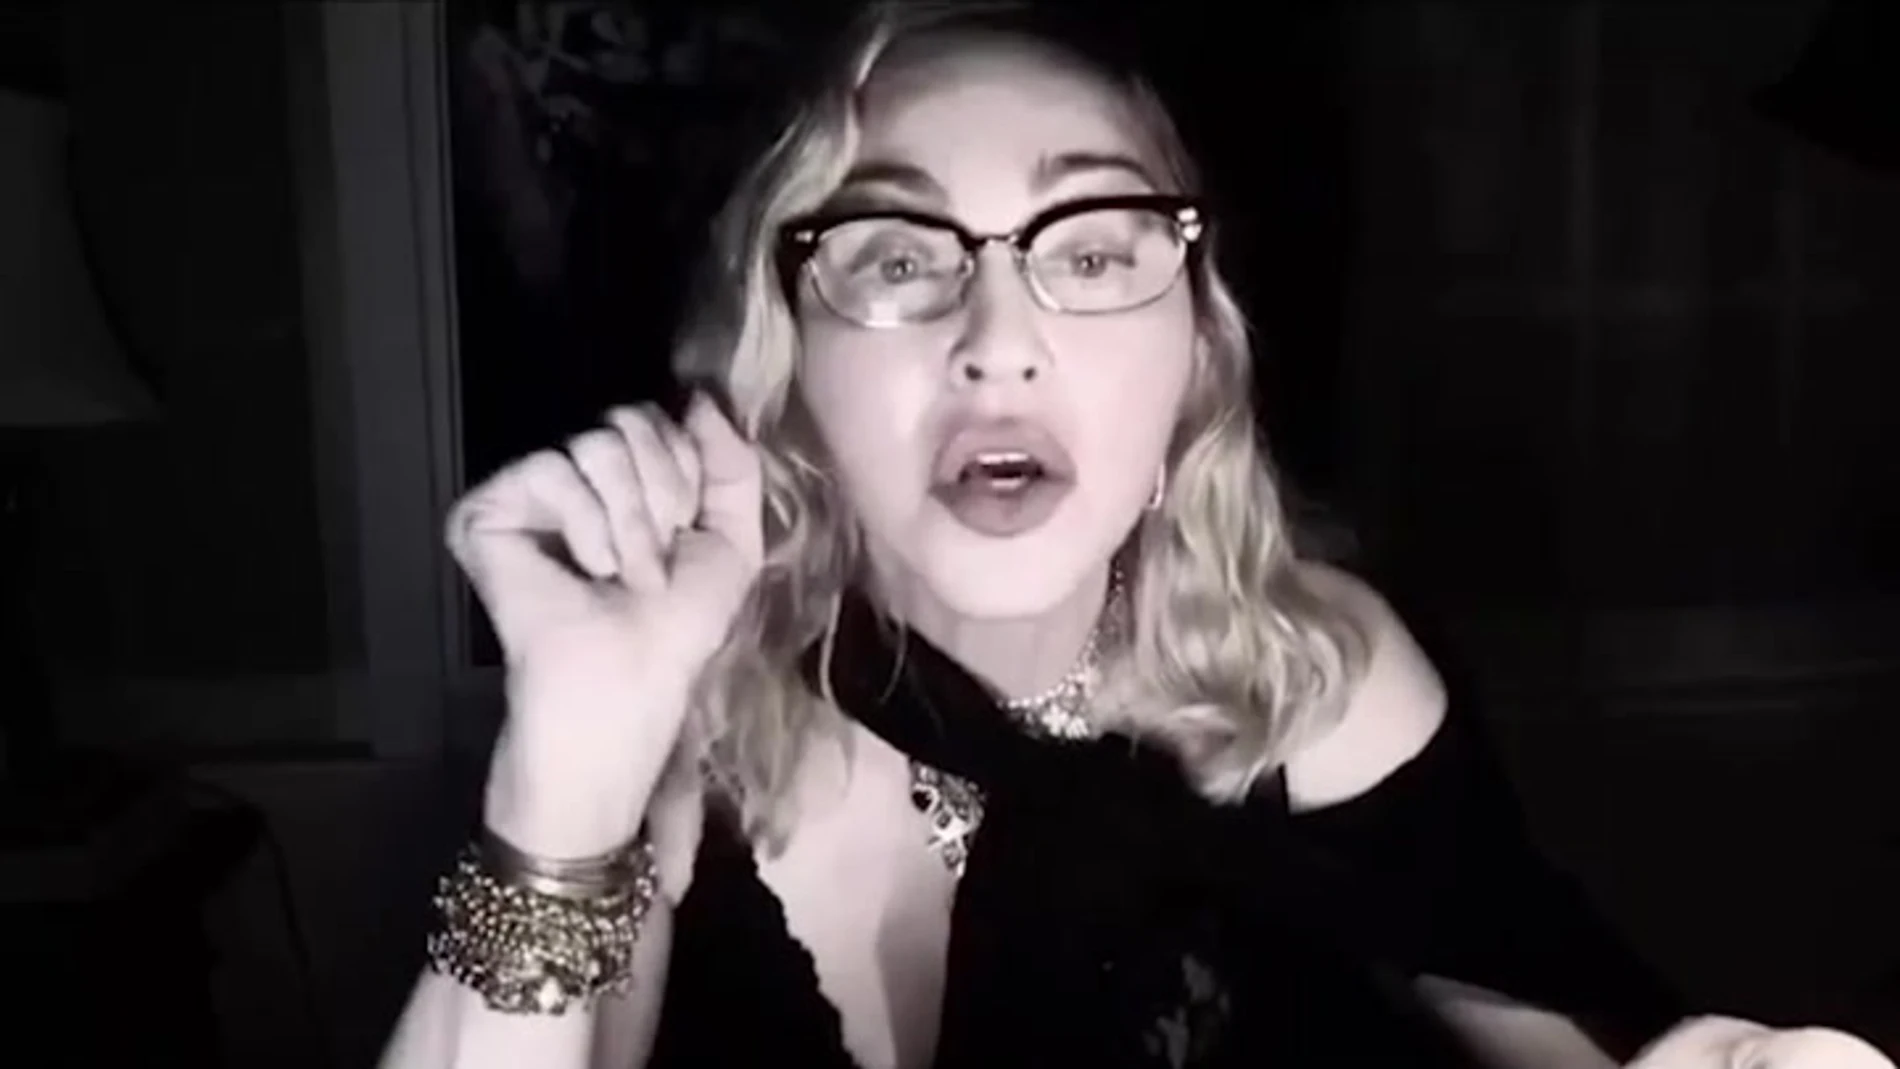 Este es el vídeo 14 que Madonna ha grabado durante su confinamiento en California